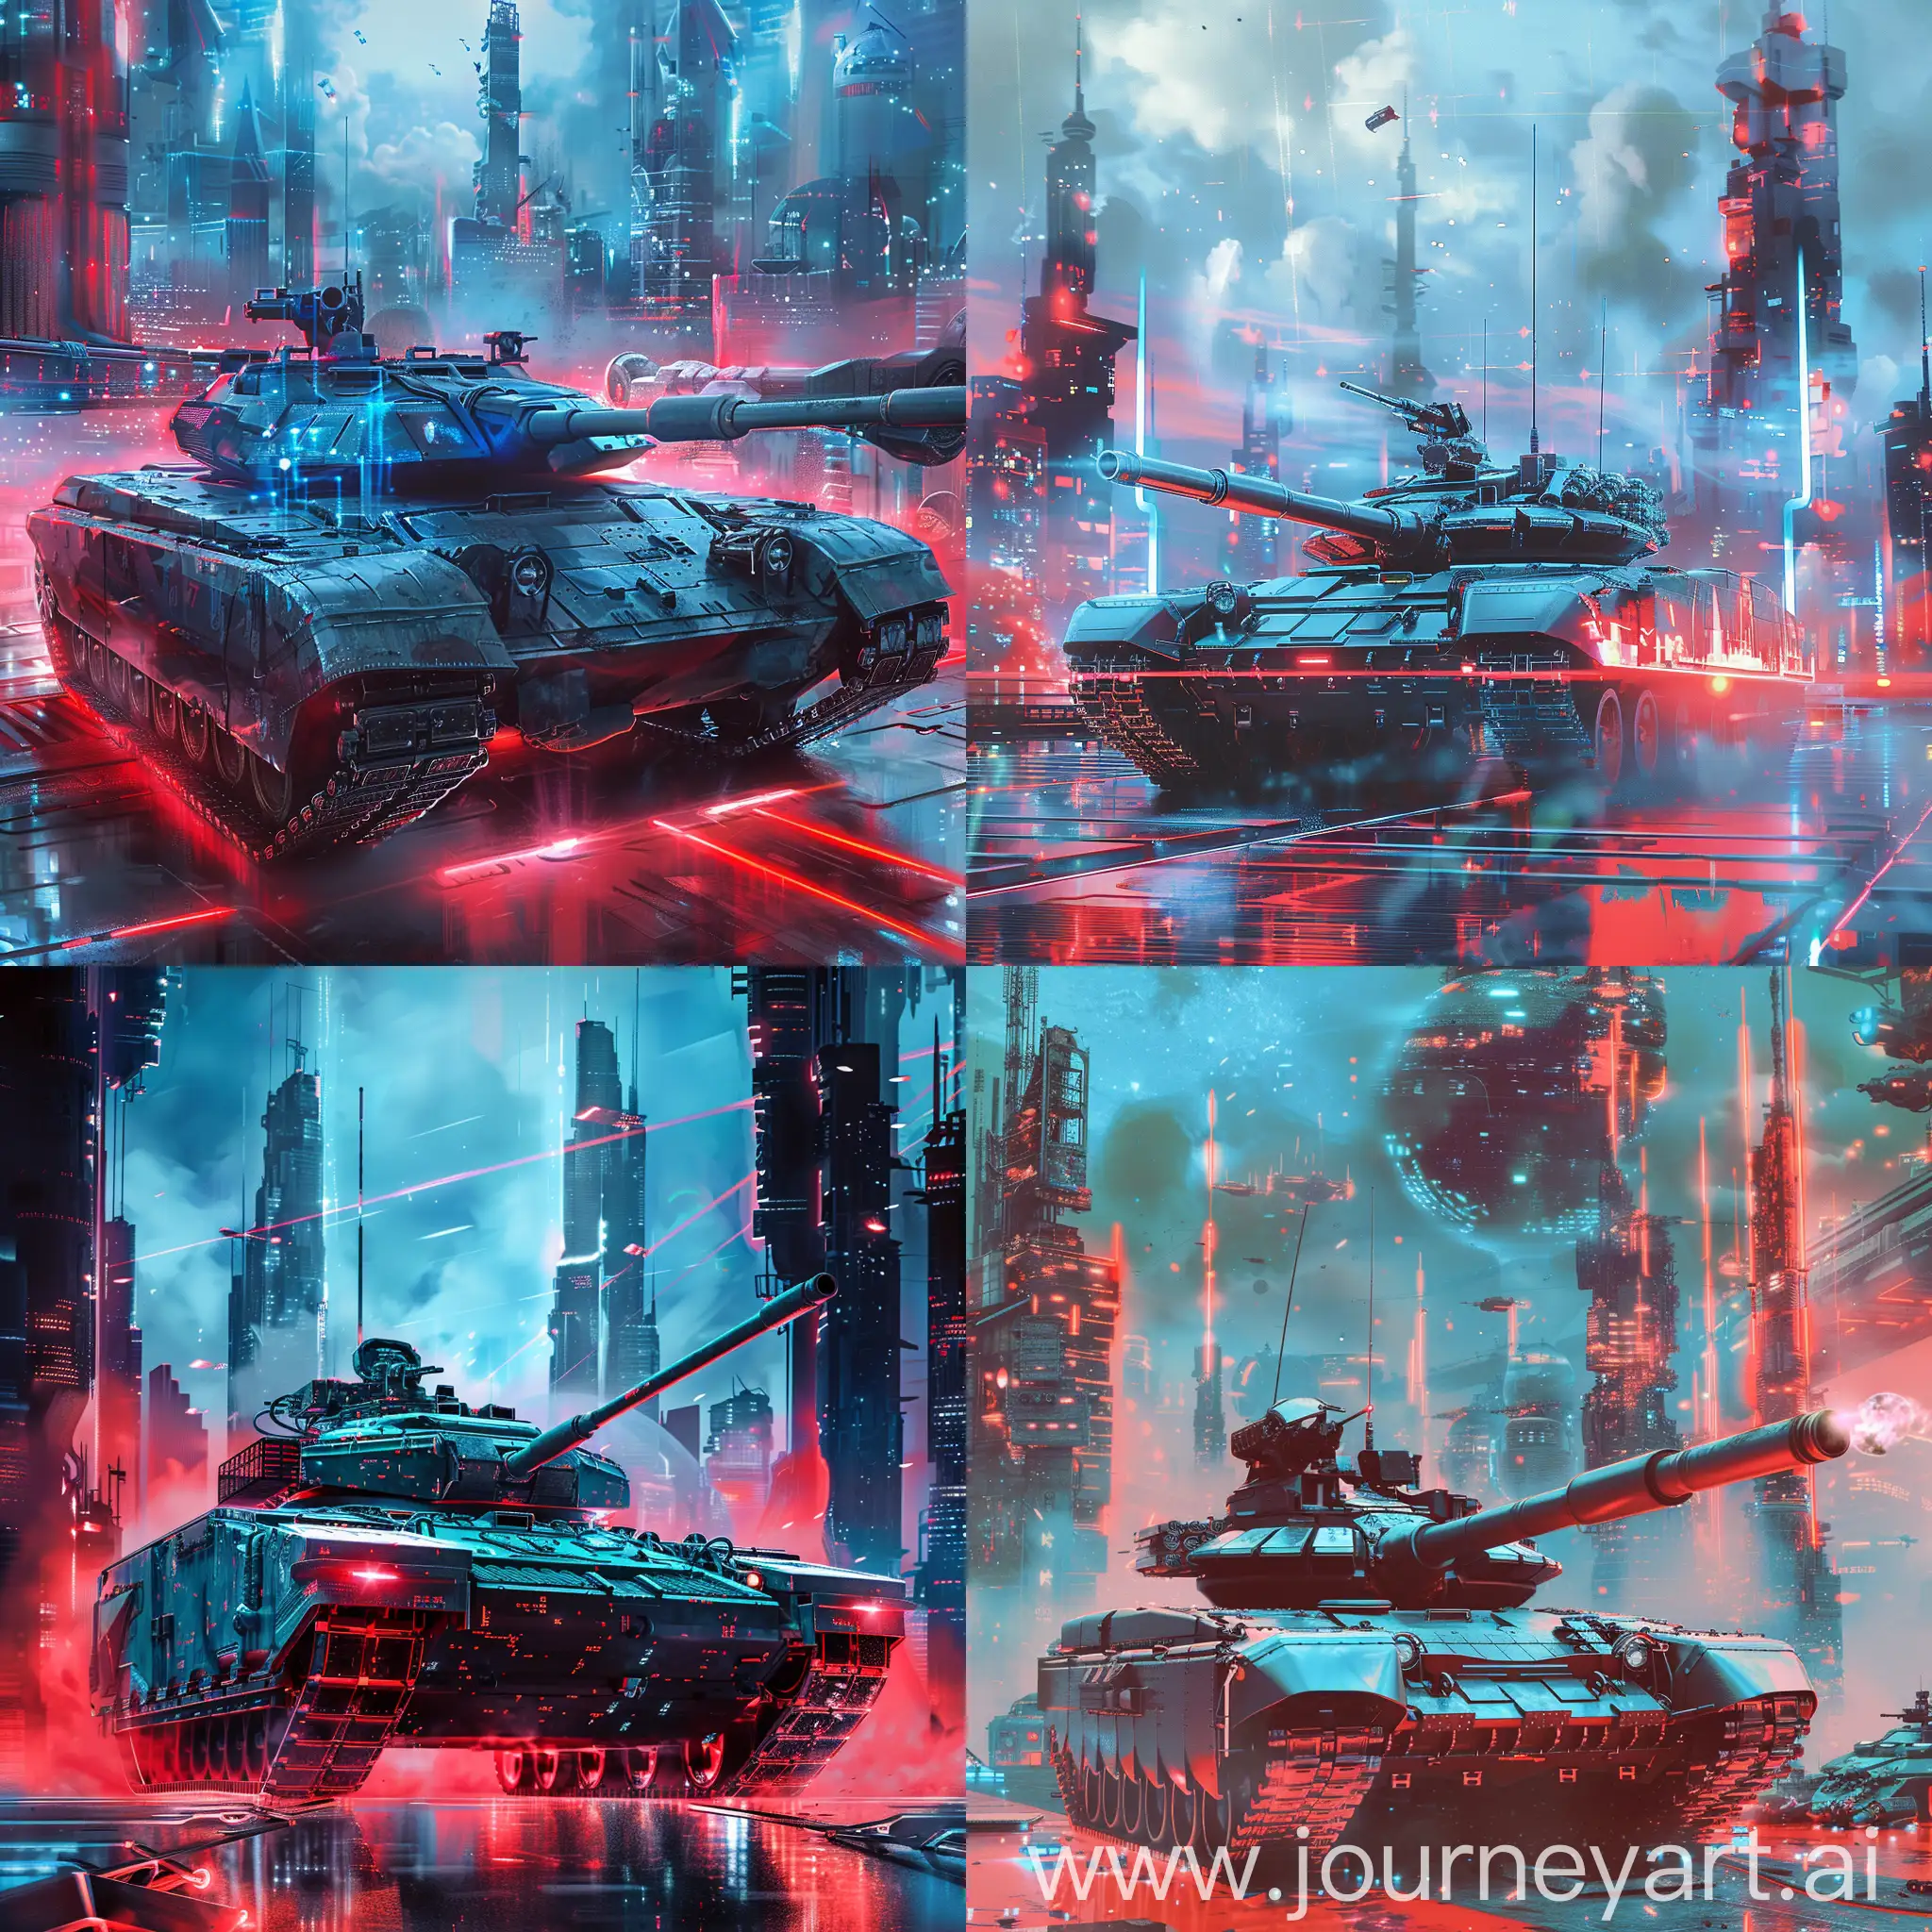 整体形象为一个全息展开的坦克，背景中可融入城市天际线、太空站或其他高技术环境，整体的颜色为红、蓝色组合的氛围